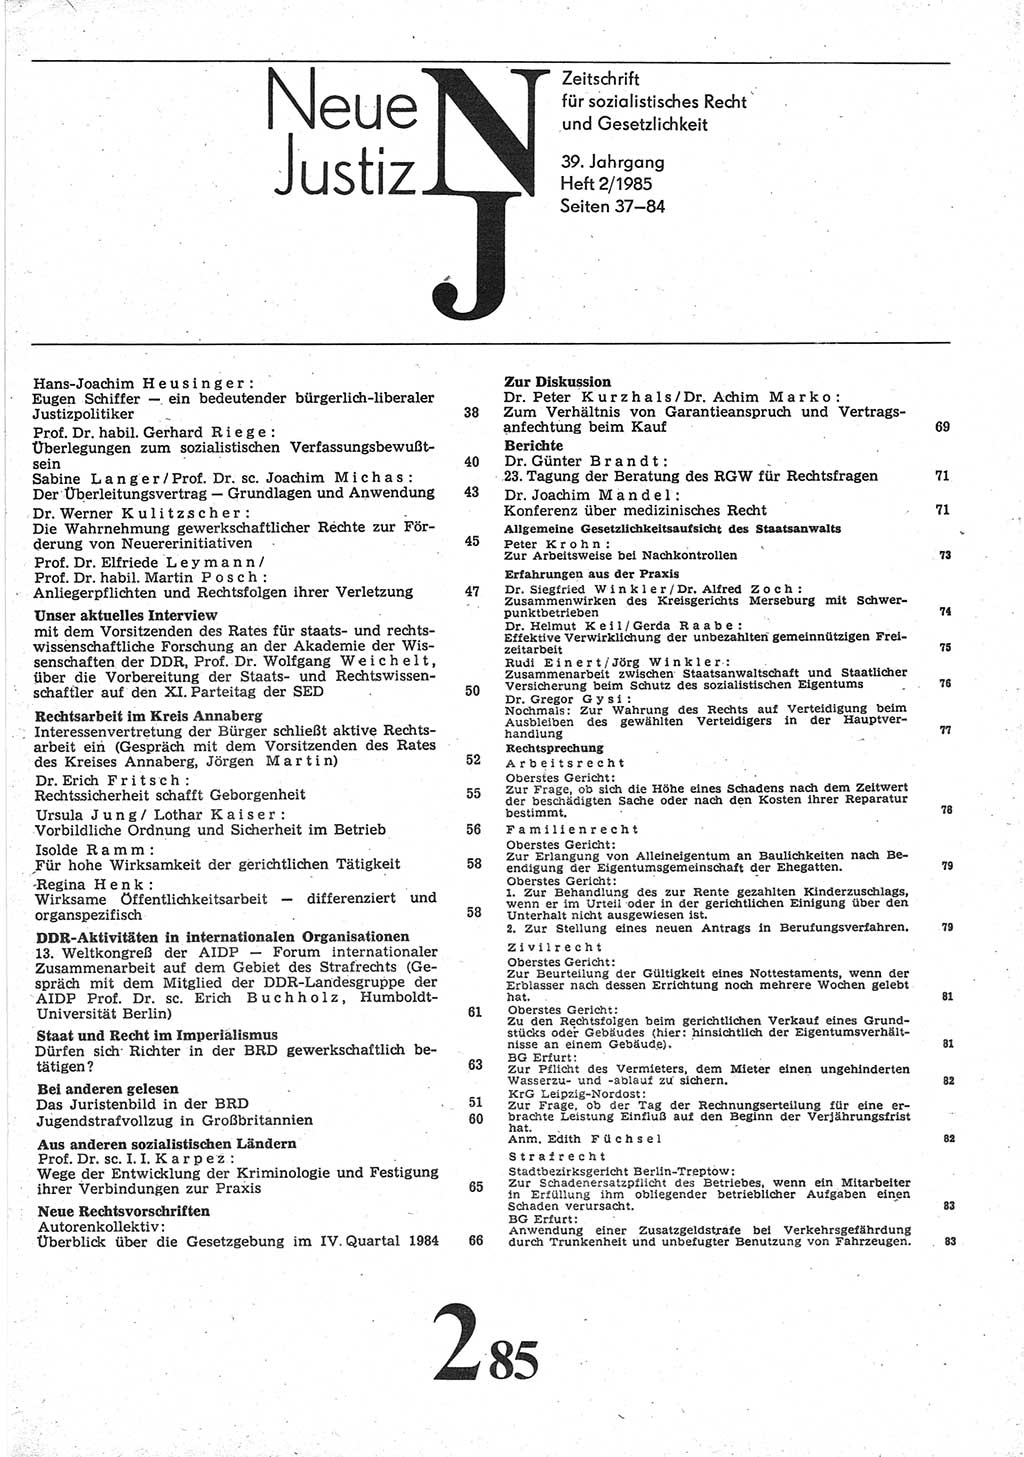 Neue Justiz (NJ), Zeitschrift für sozialistisches Recht und Gesetzlichkeit [Deutsche Demokratische Republik (DDR)], 39. Jahrgang 1985, Seite 37 (NJ DDR 1985, S. 37)